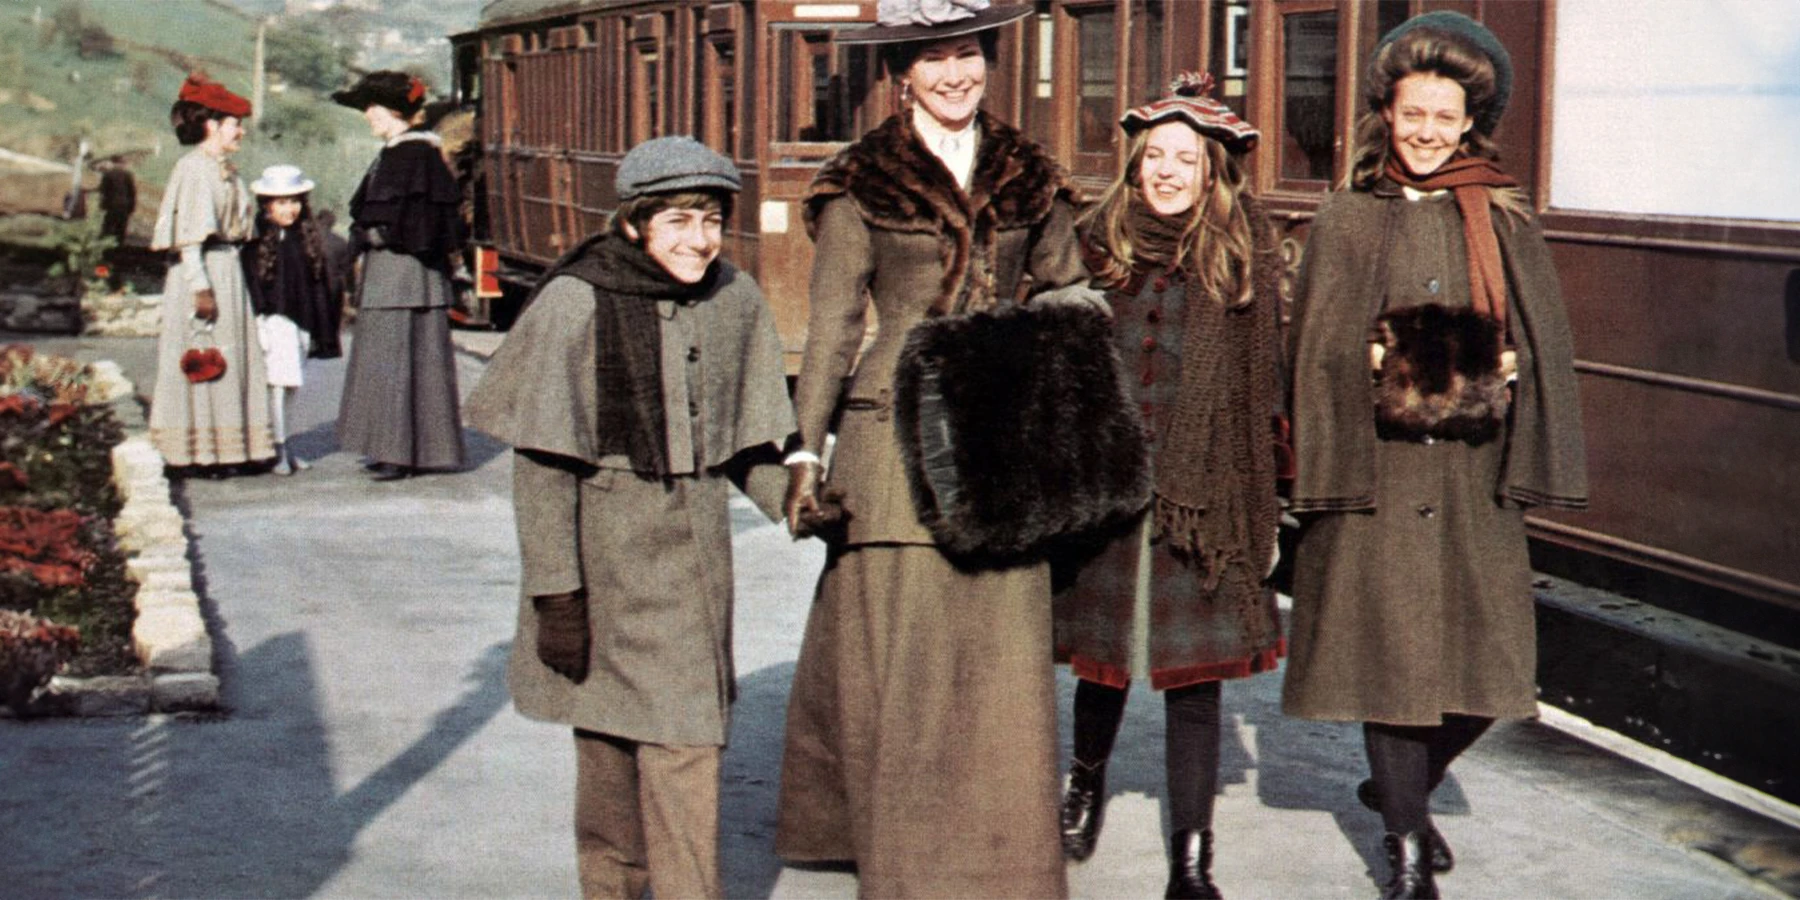 Jenny Agutter stars in adaptation of Edith Nesbit’s 'The Railway Children'. JAM on the Marsh screens the film in Cinemarsh.